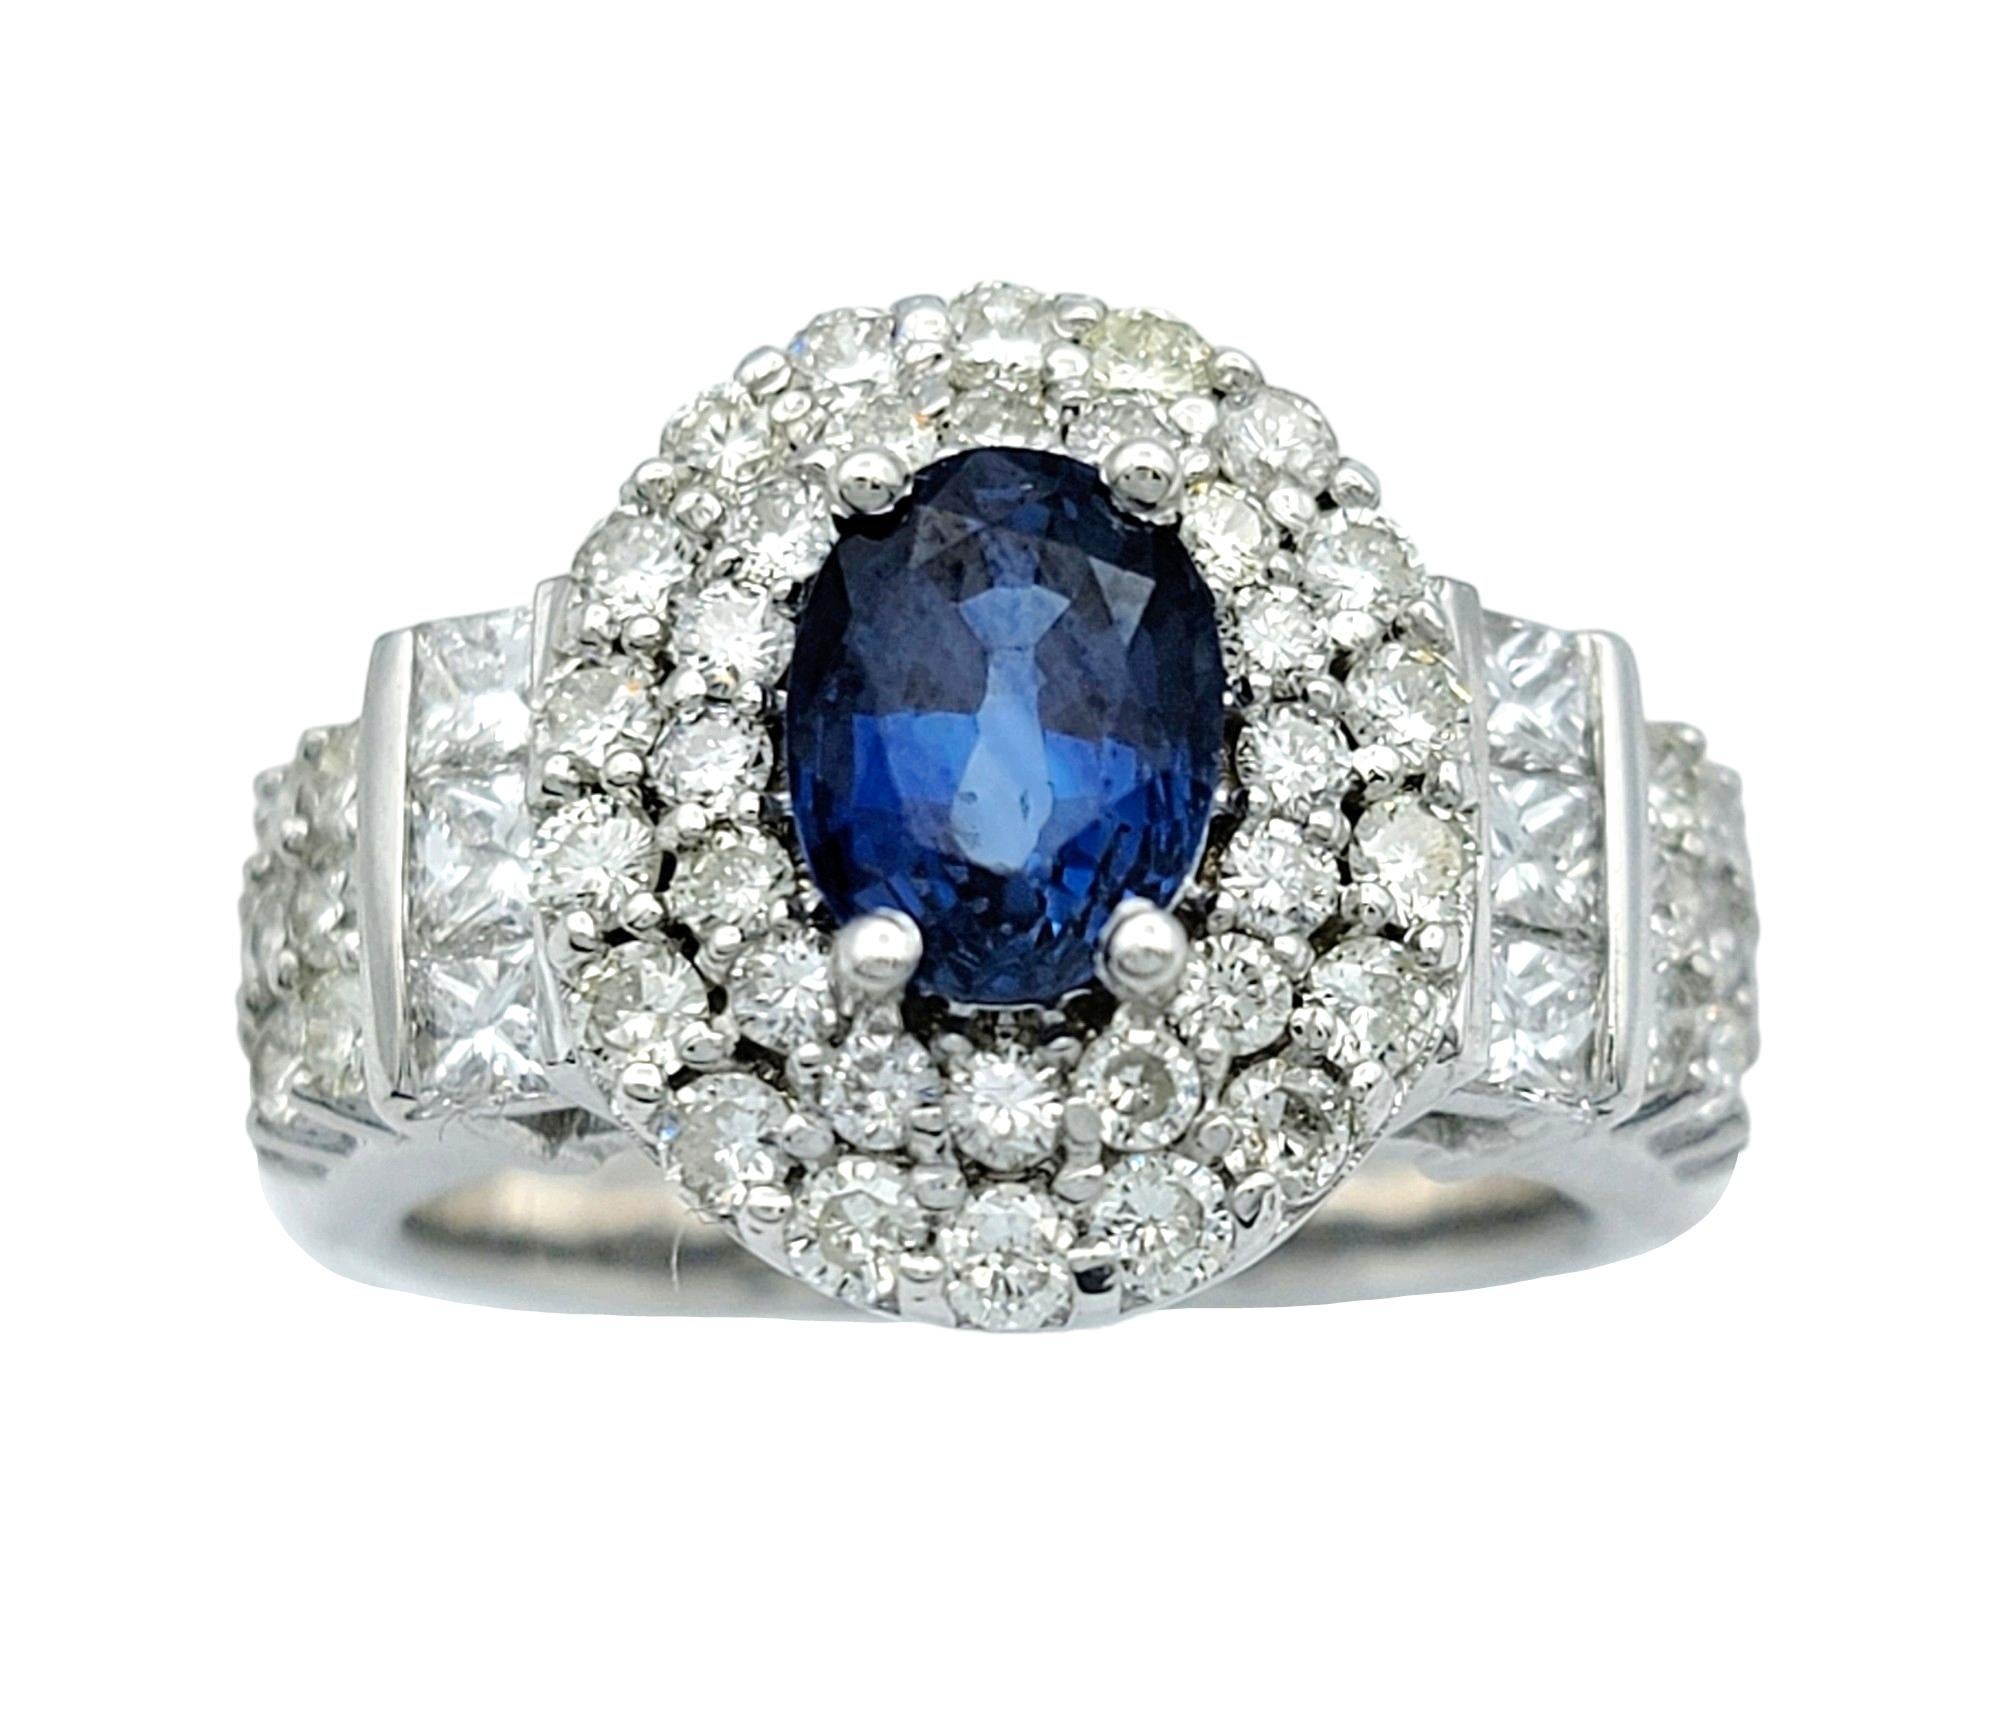 Ringgröße: 6

Dieser wunderschöne ovale Cocktailring mit blauem Saphir und doppeltem Diamantbesatz in strahlendem 14-karätigem Weißgold ist ein schillerndes Beispiel für Eleganz und Raffinesse. In seinem Zentrum zieht ein ovaler blauer Saphir mit